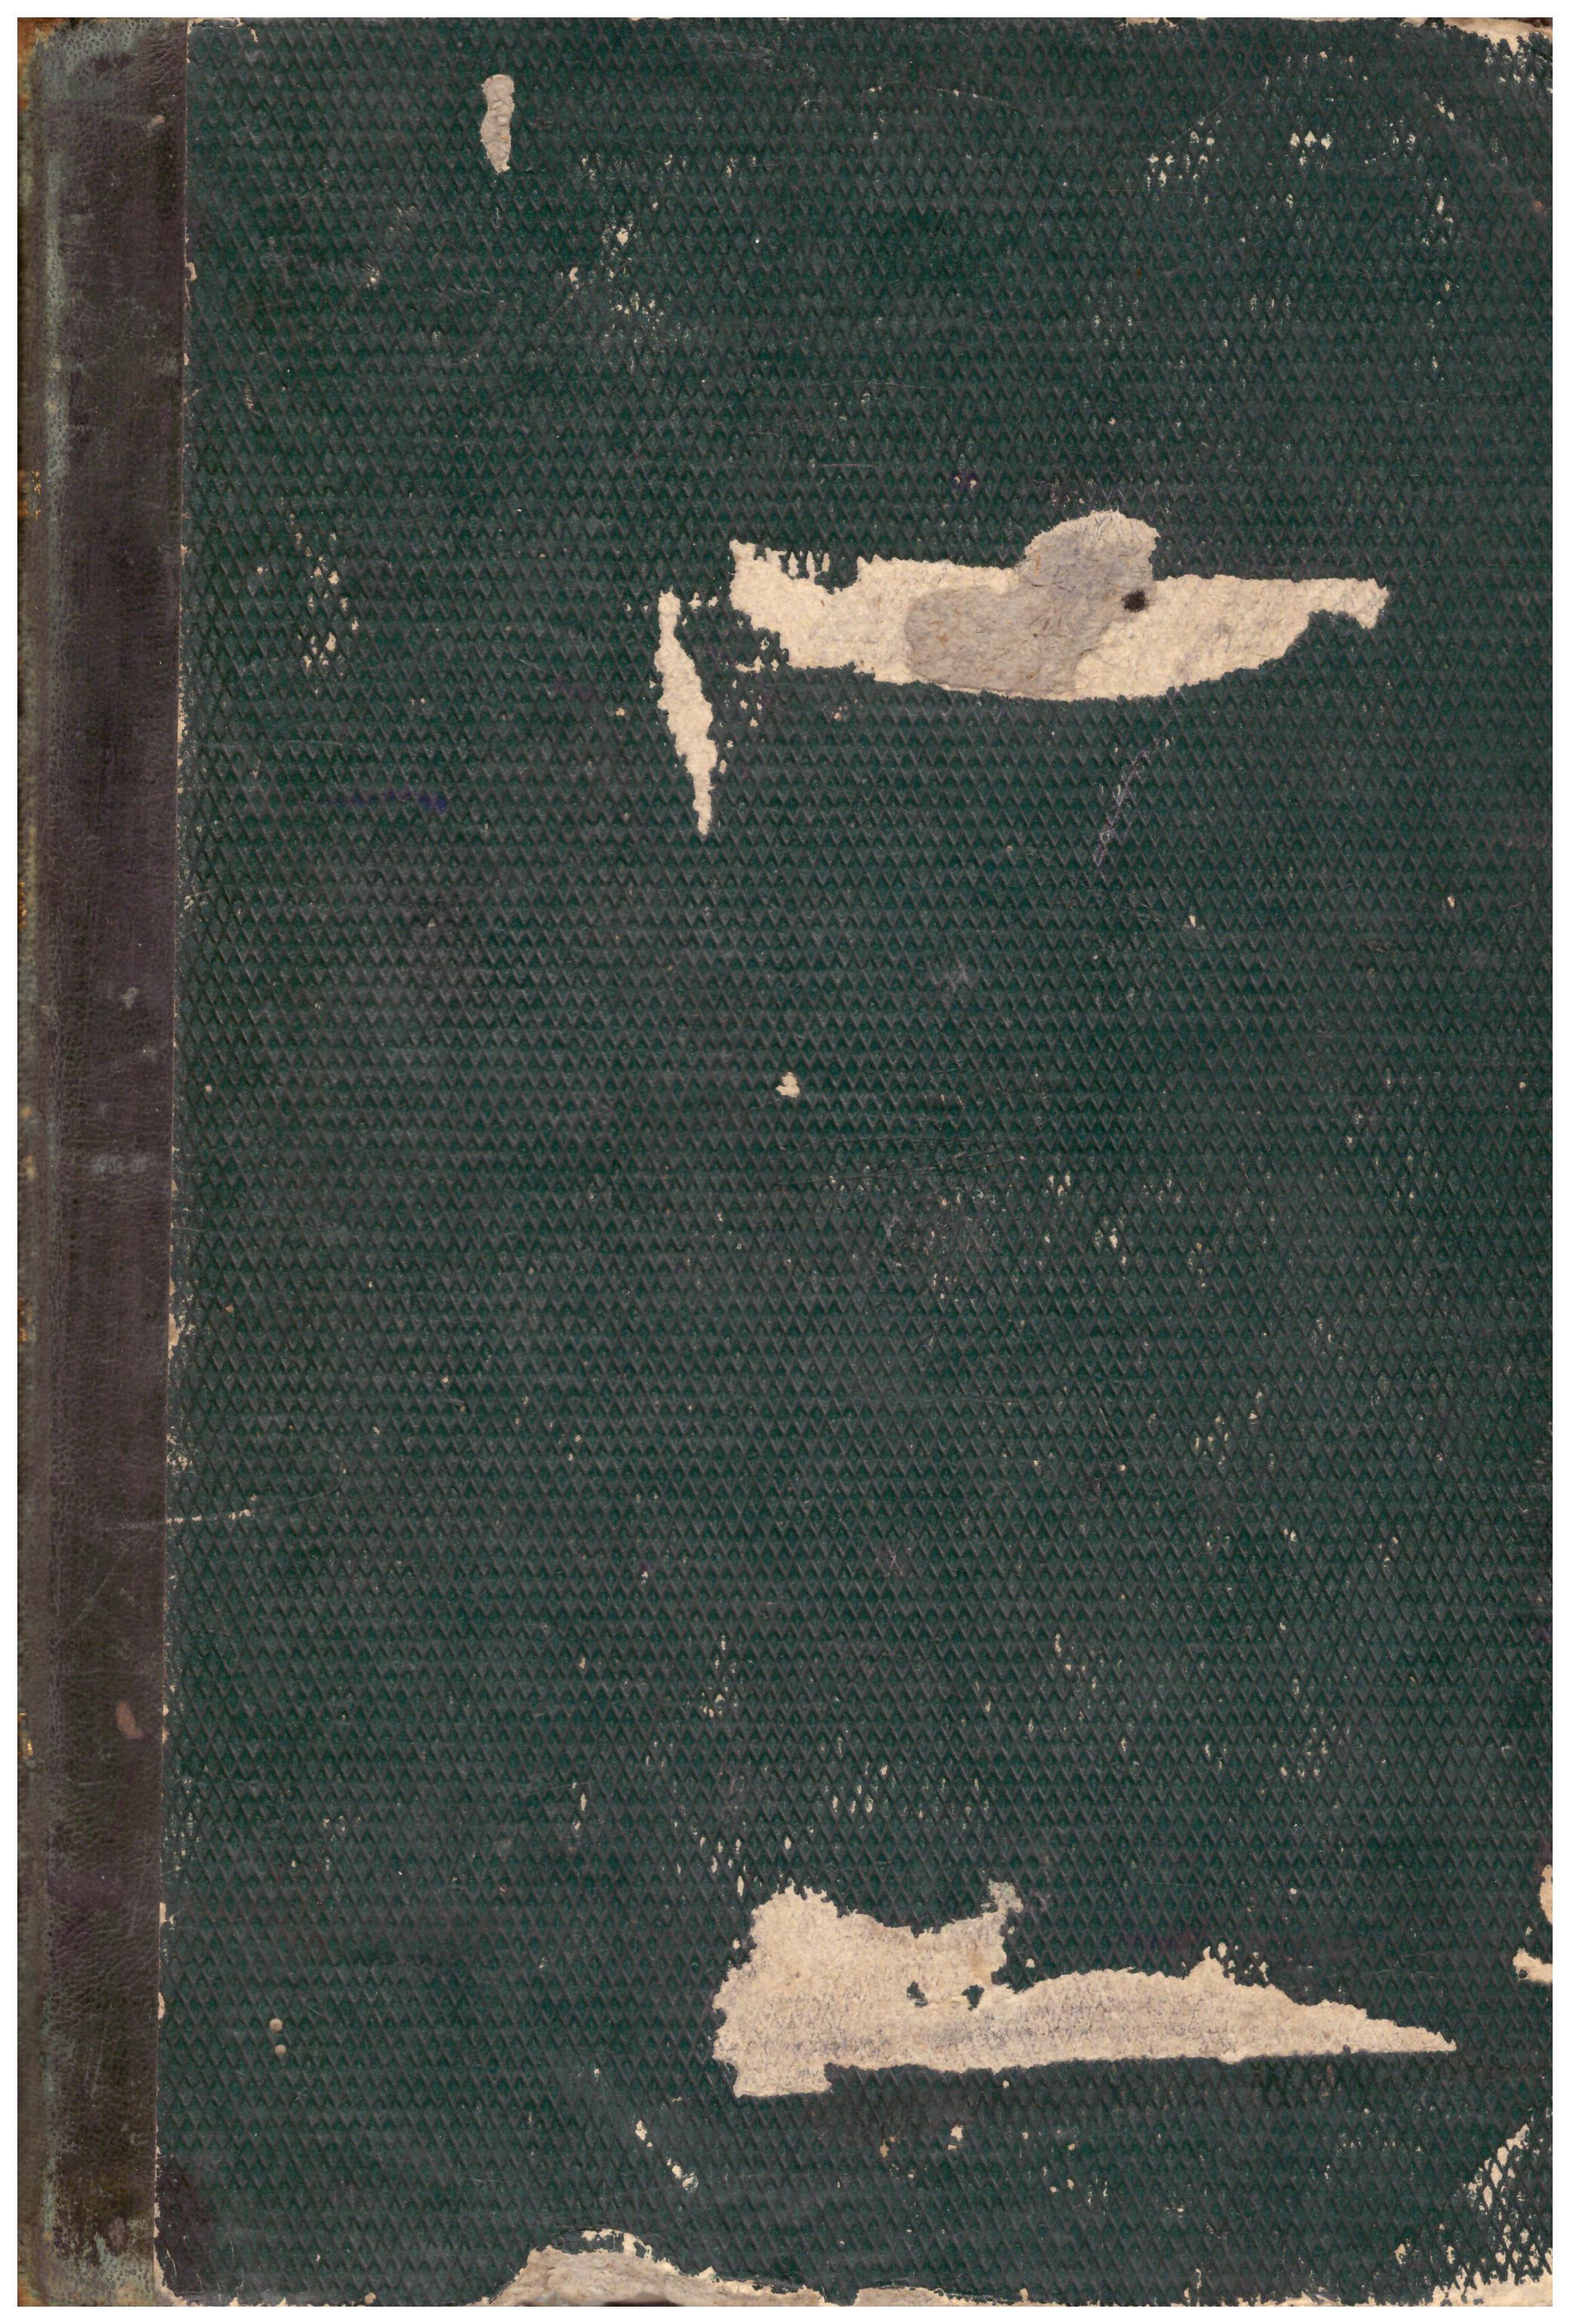 Titolo: Vita di San Paolo della Croce Autore: Padre Paolo Giuseppe Editore: tipografia salviucci, Roma 1867